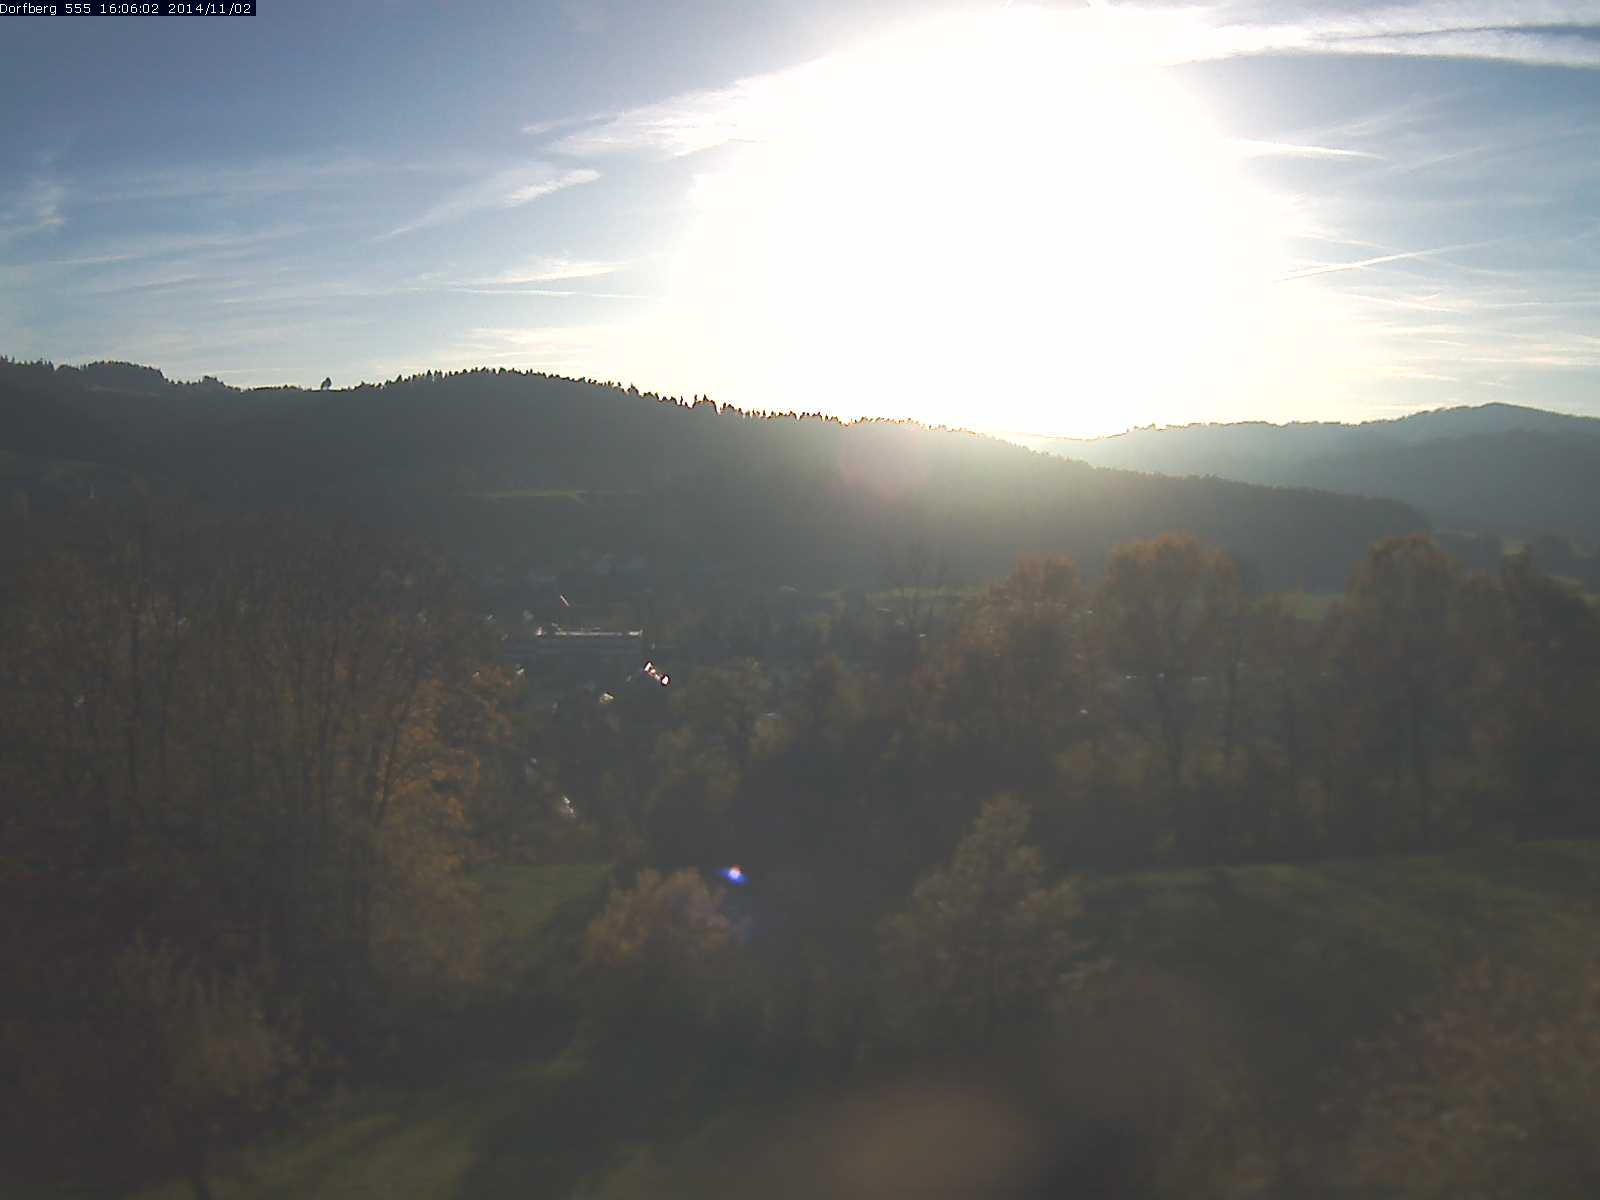 Webcam-Bild: Aussicht vom Dorfberg in Langnau 20141102-160601